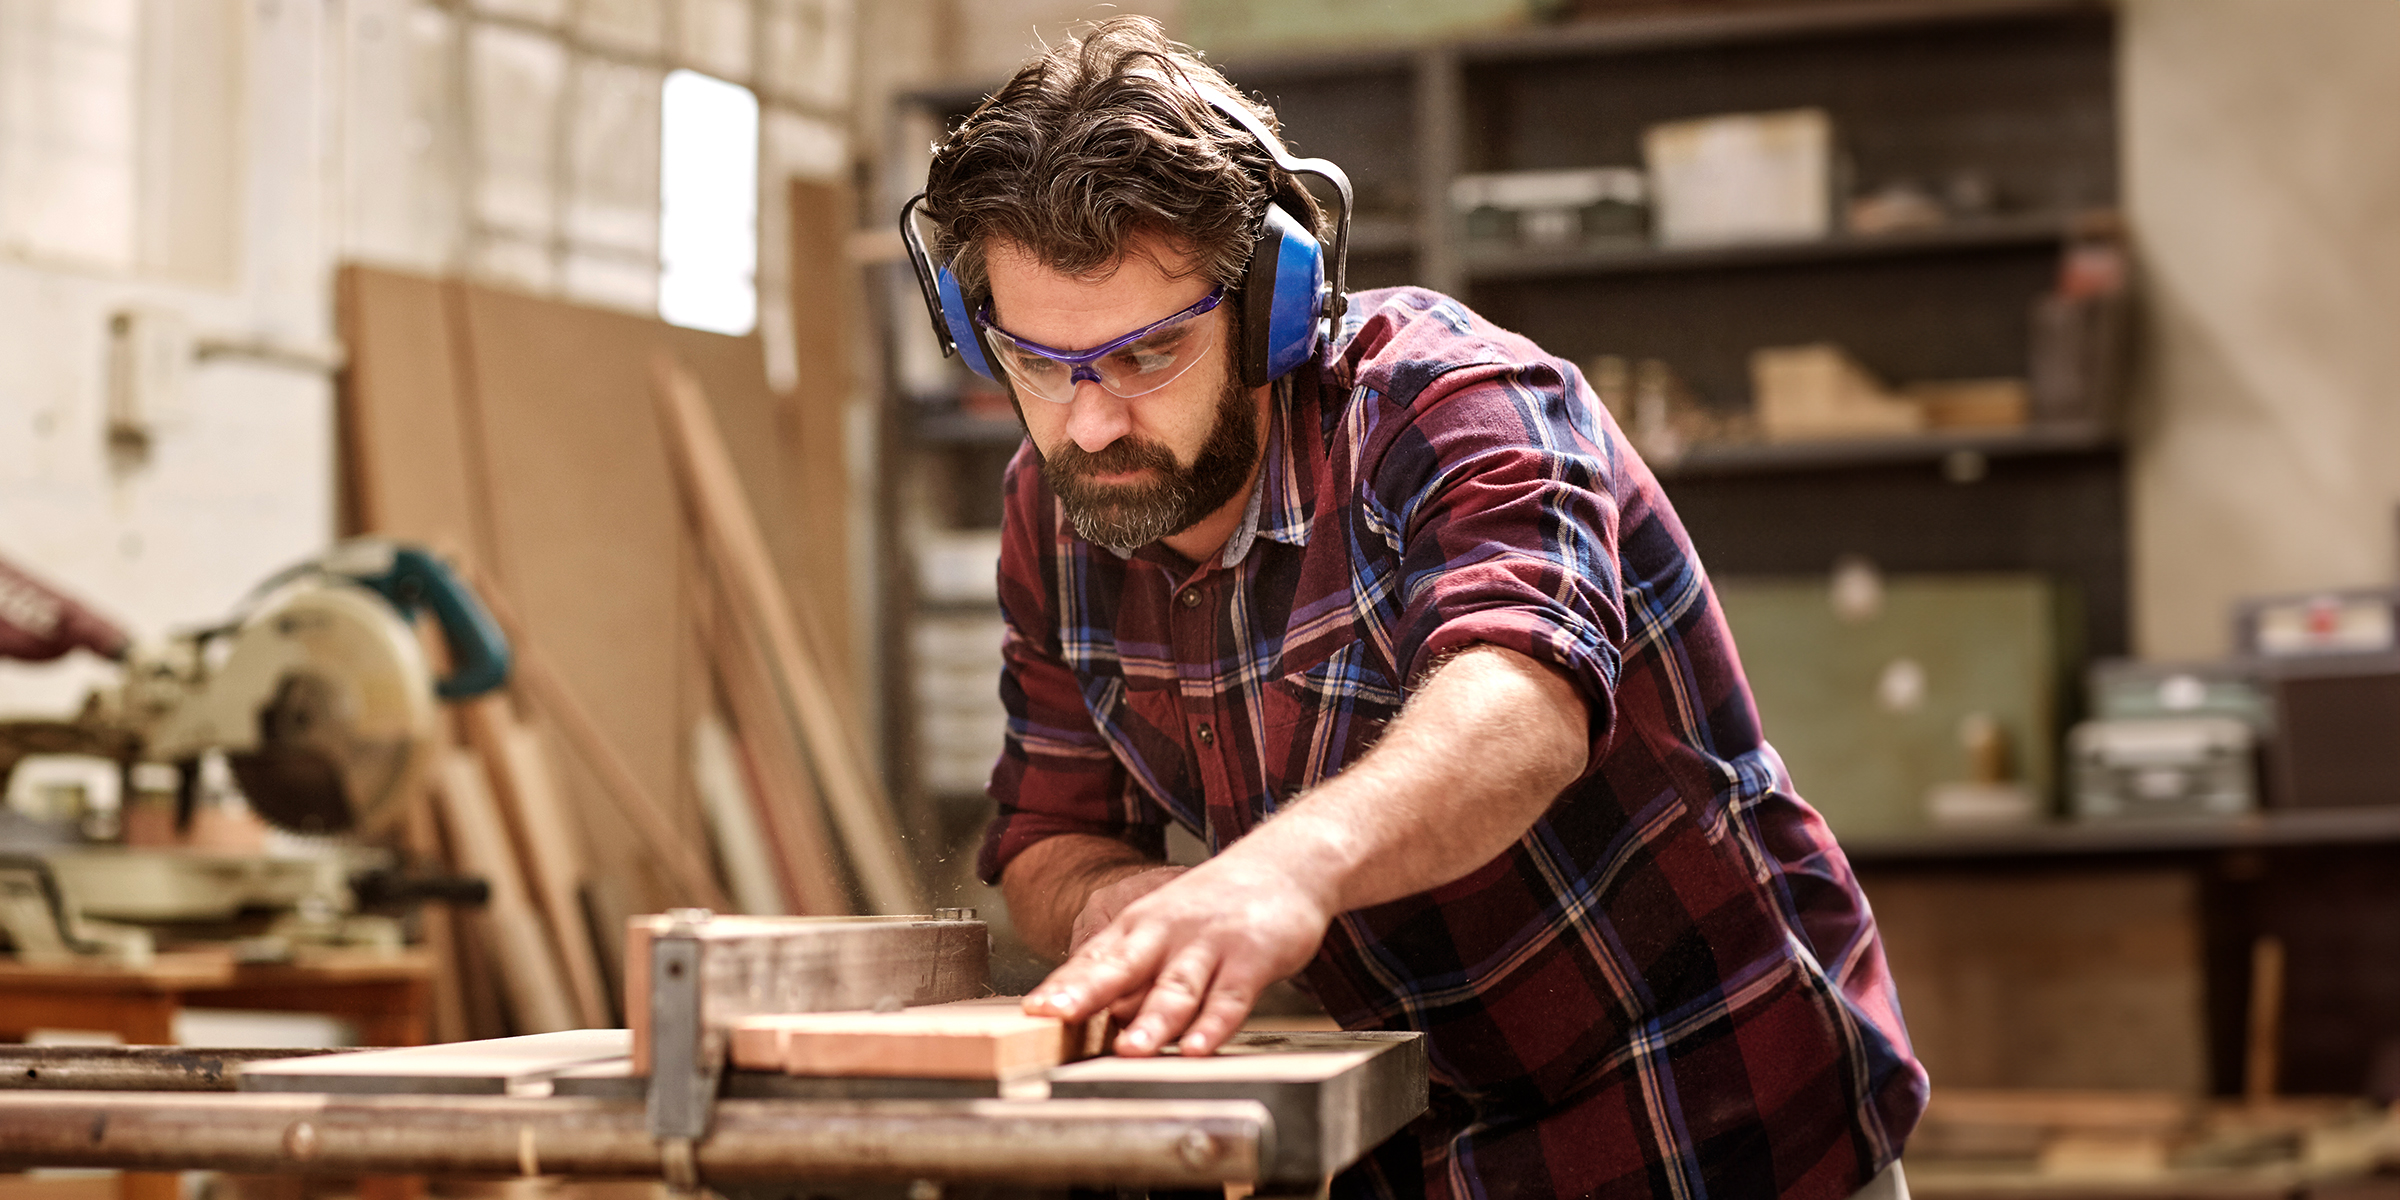 A carpenter at work | Source: Shutterstock